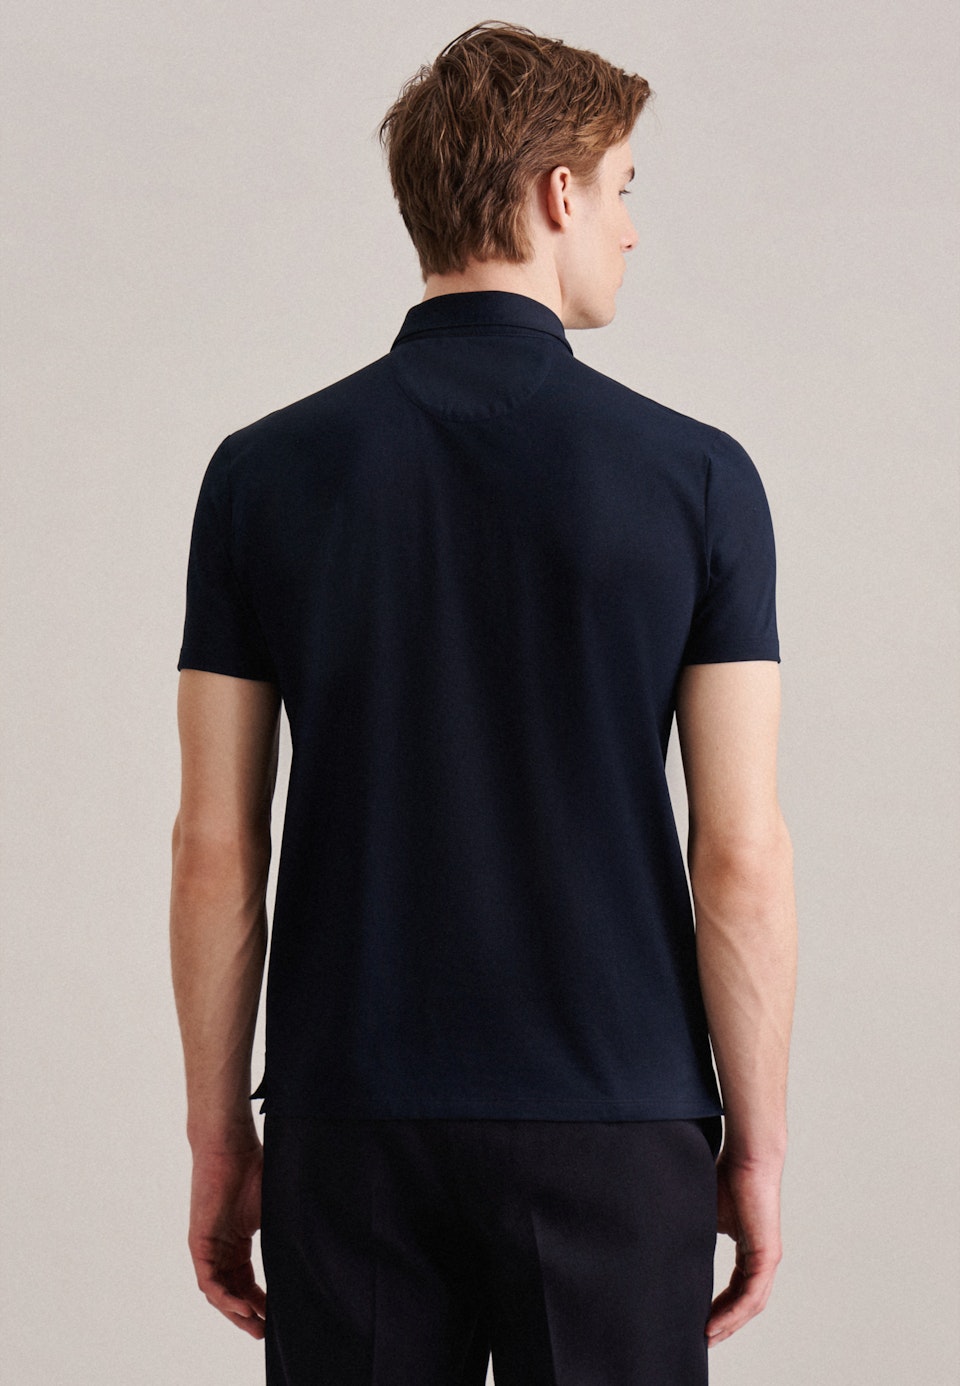 Kragen Polo-Shirt Tailliert (Slim-Fit) in Dunkelblau |  Seidensticker Onlineshop